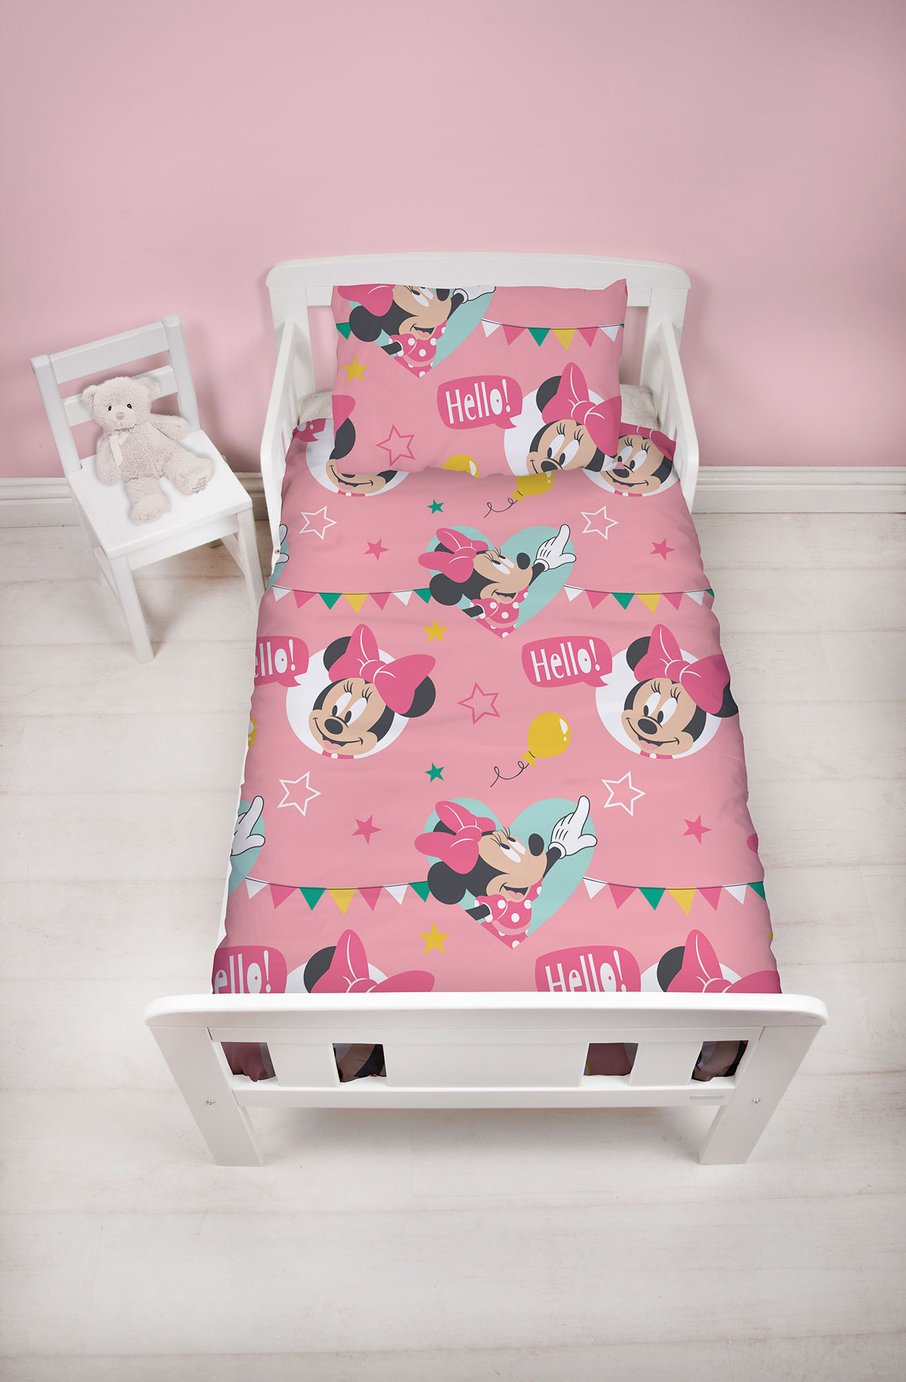 Disney Minnie Mouse Children's Bedding Set - Toddler